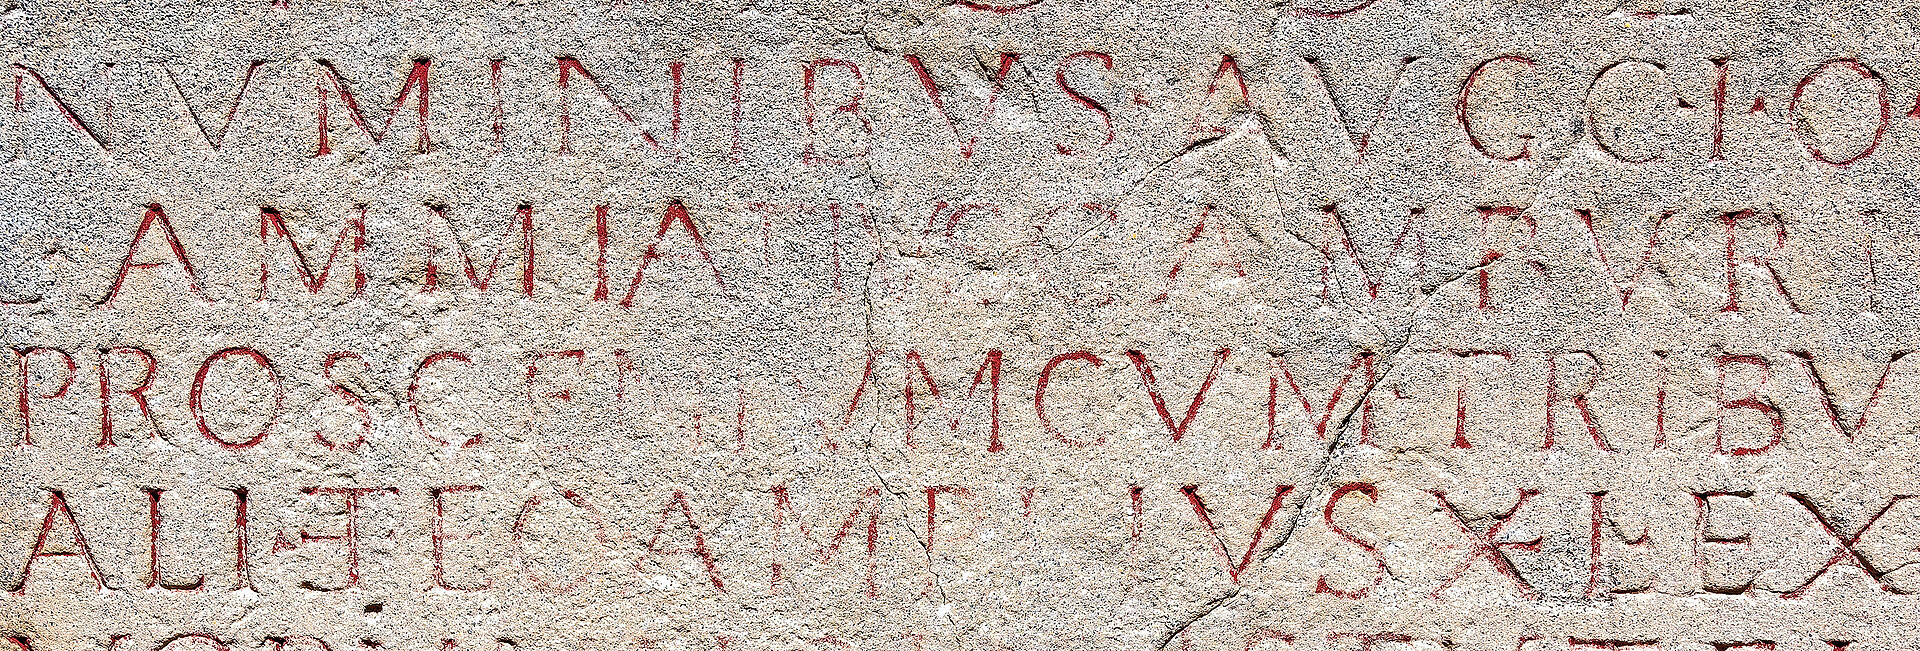 Steintafel mit lateinischer Inschrift